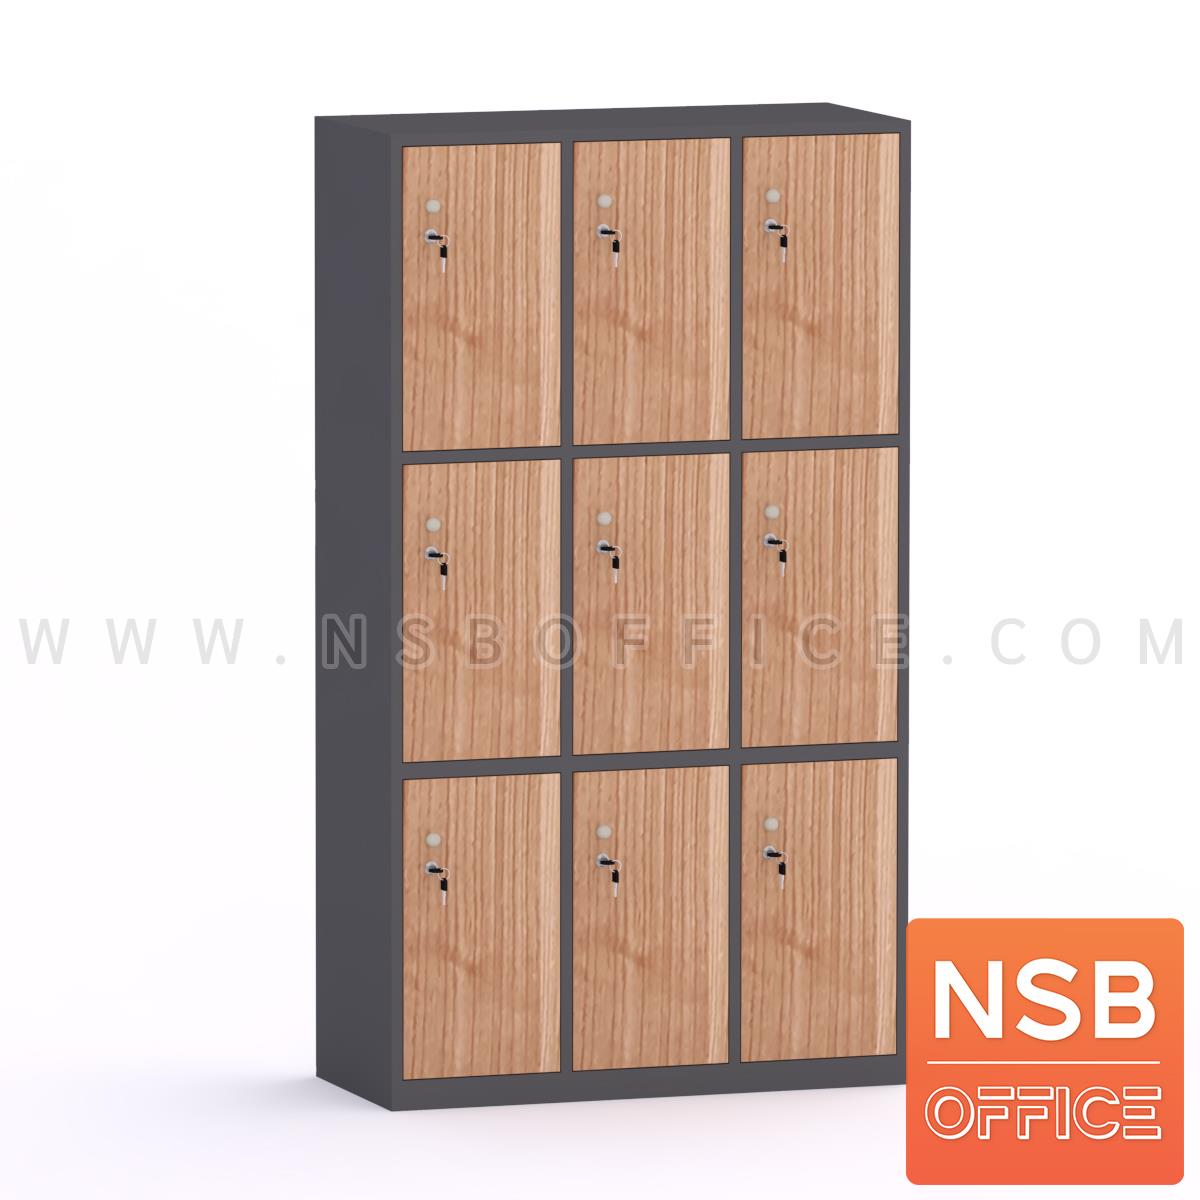 ตู้ล็อกเกอร์ไม้ 9 ประตู  รุ่น Nivosa 2 (นิโวซ่า 2)  